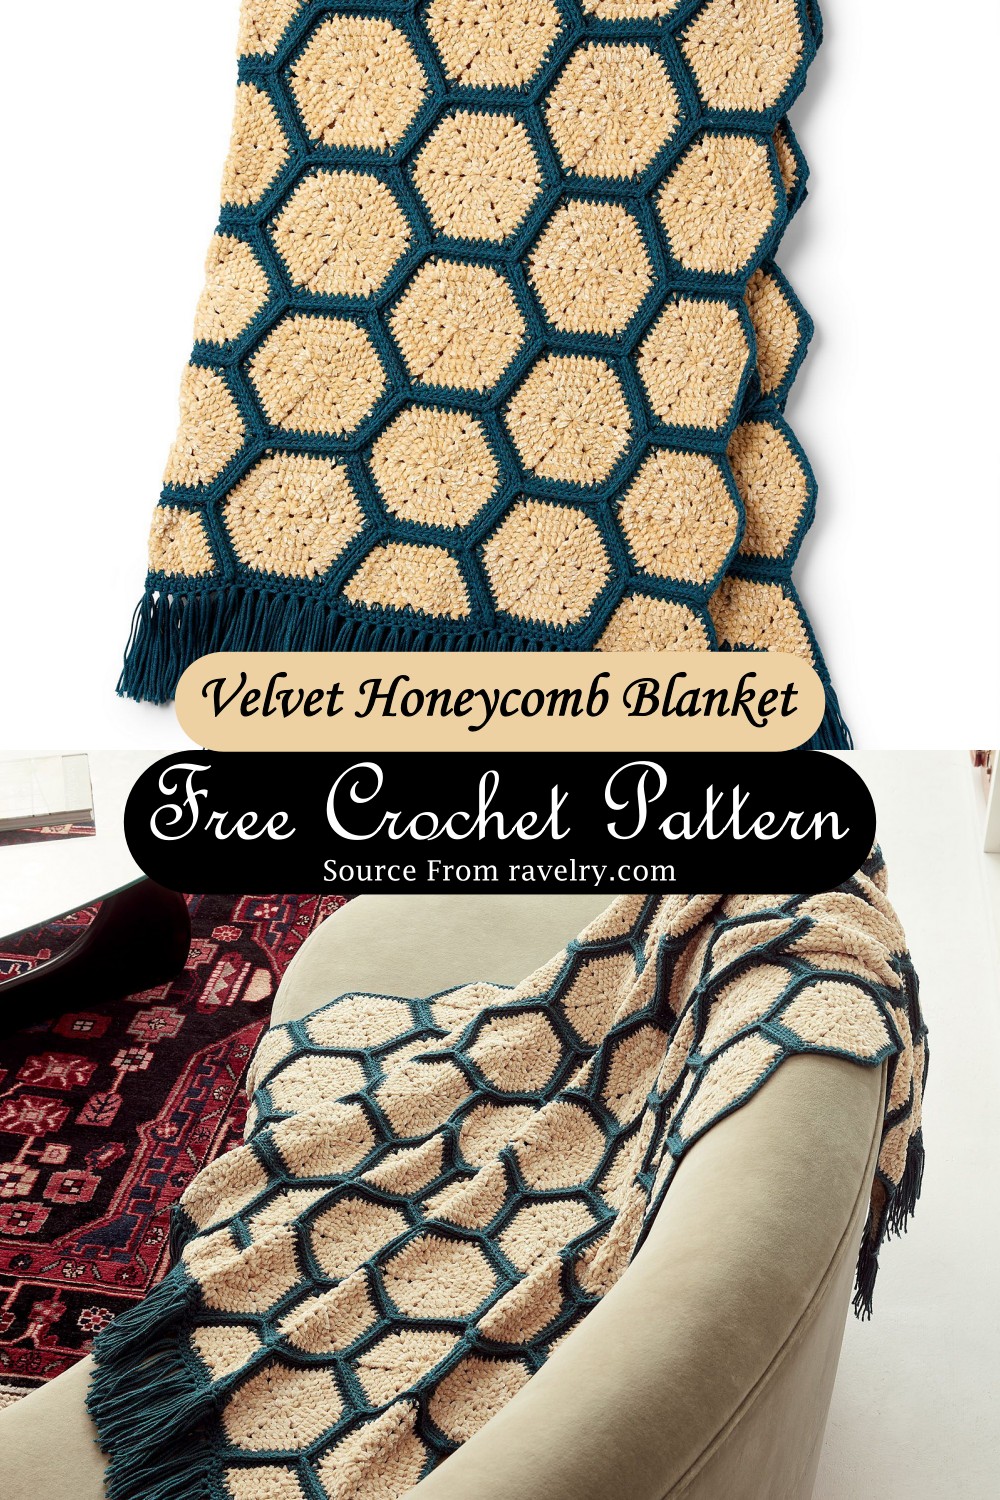 Velvet Honeycomb Blanket